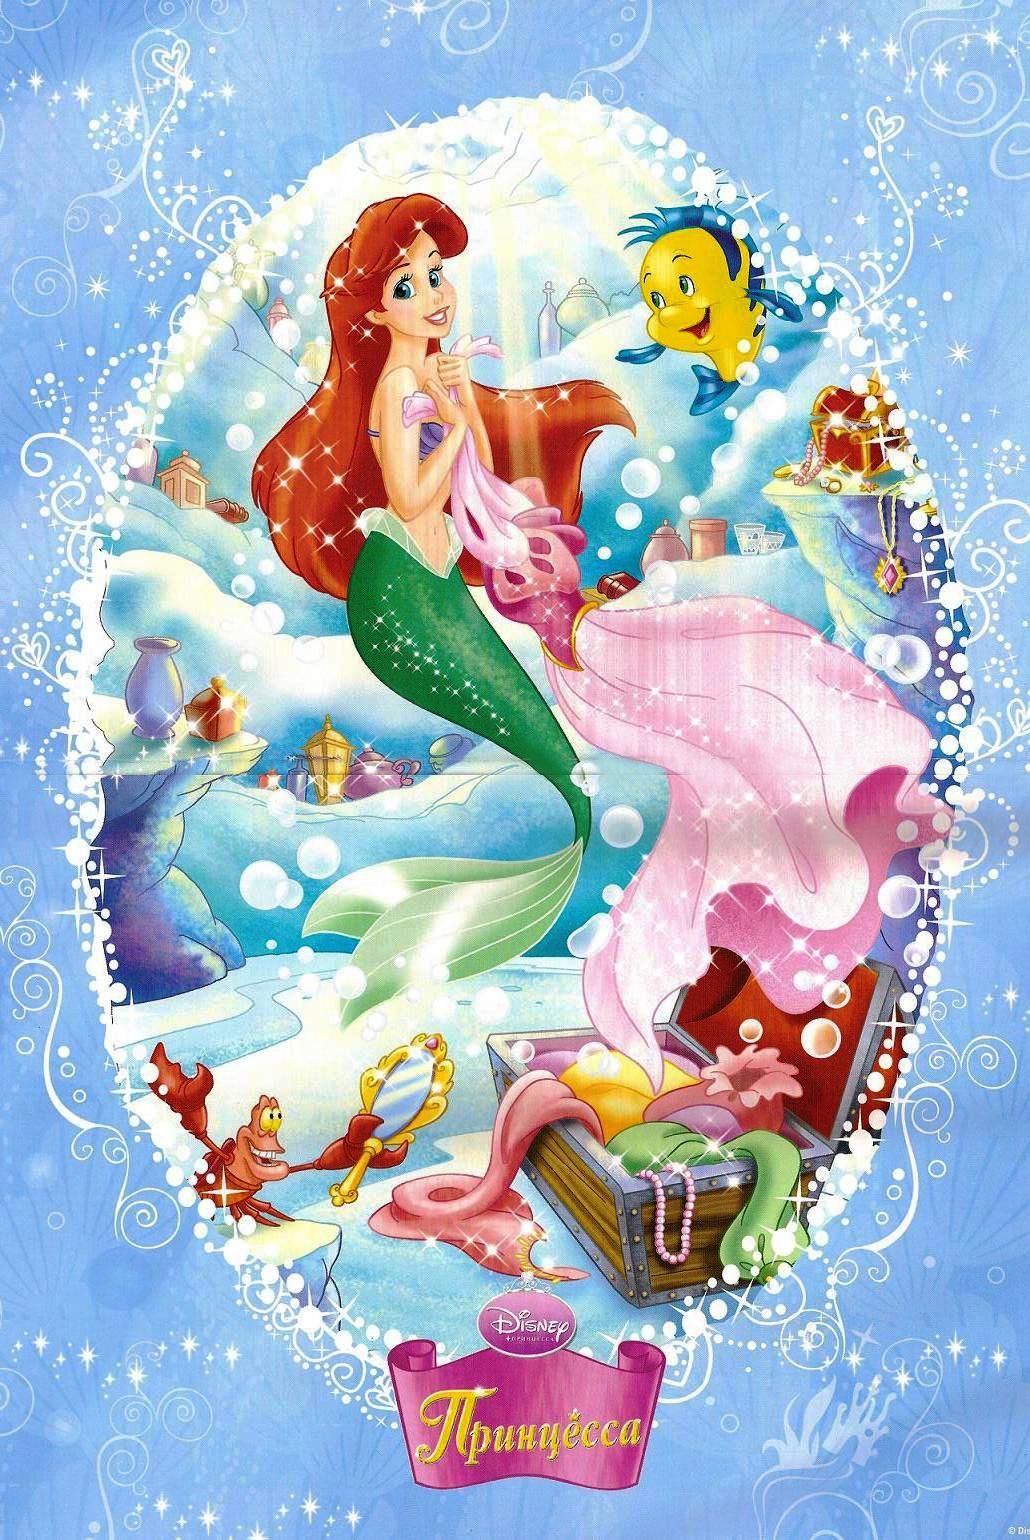 Wallpaper. Mermaid wallpaper, Disney princess wallpaper, Cute wallpaper